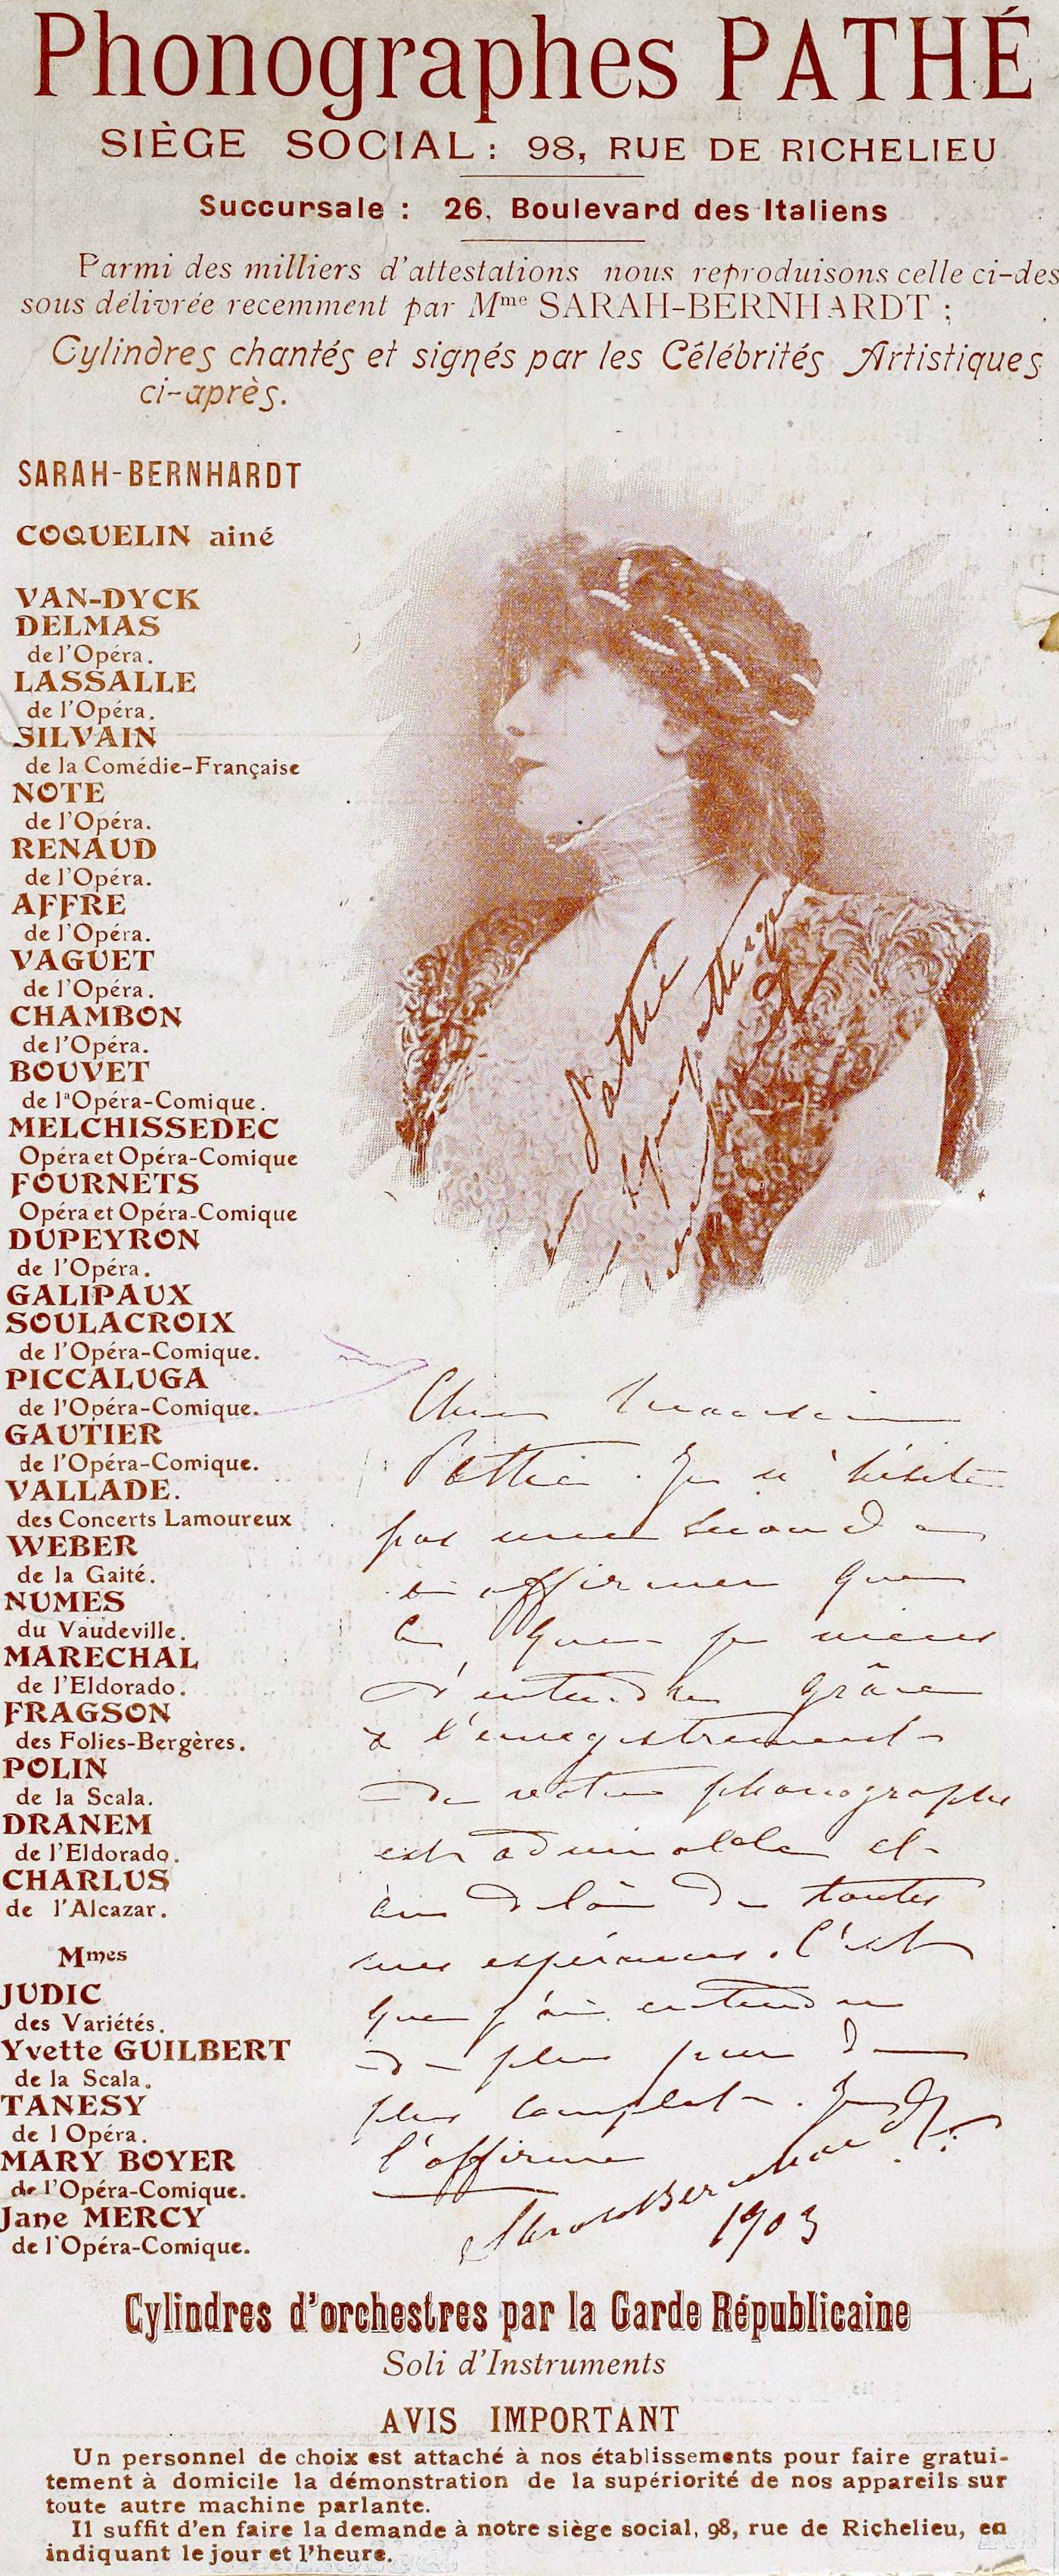 Publicité Phonographes Pathé Sarah Bernhardt - source : Gallica-BnF